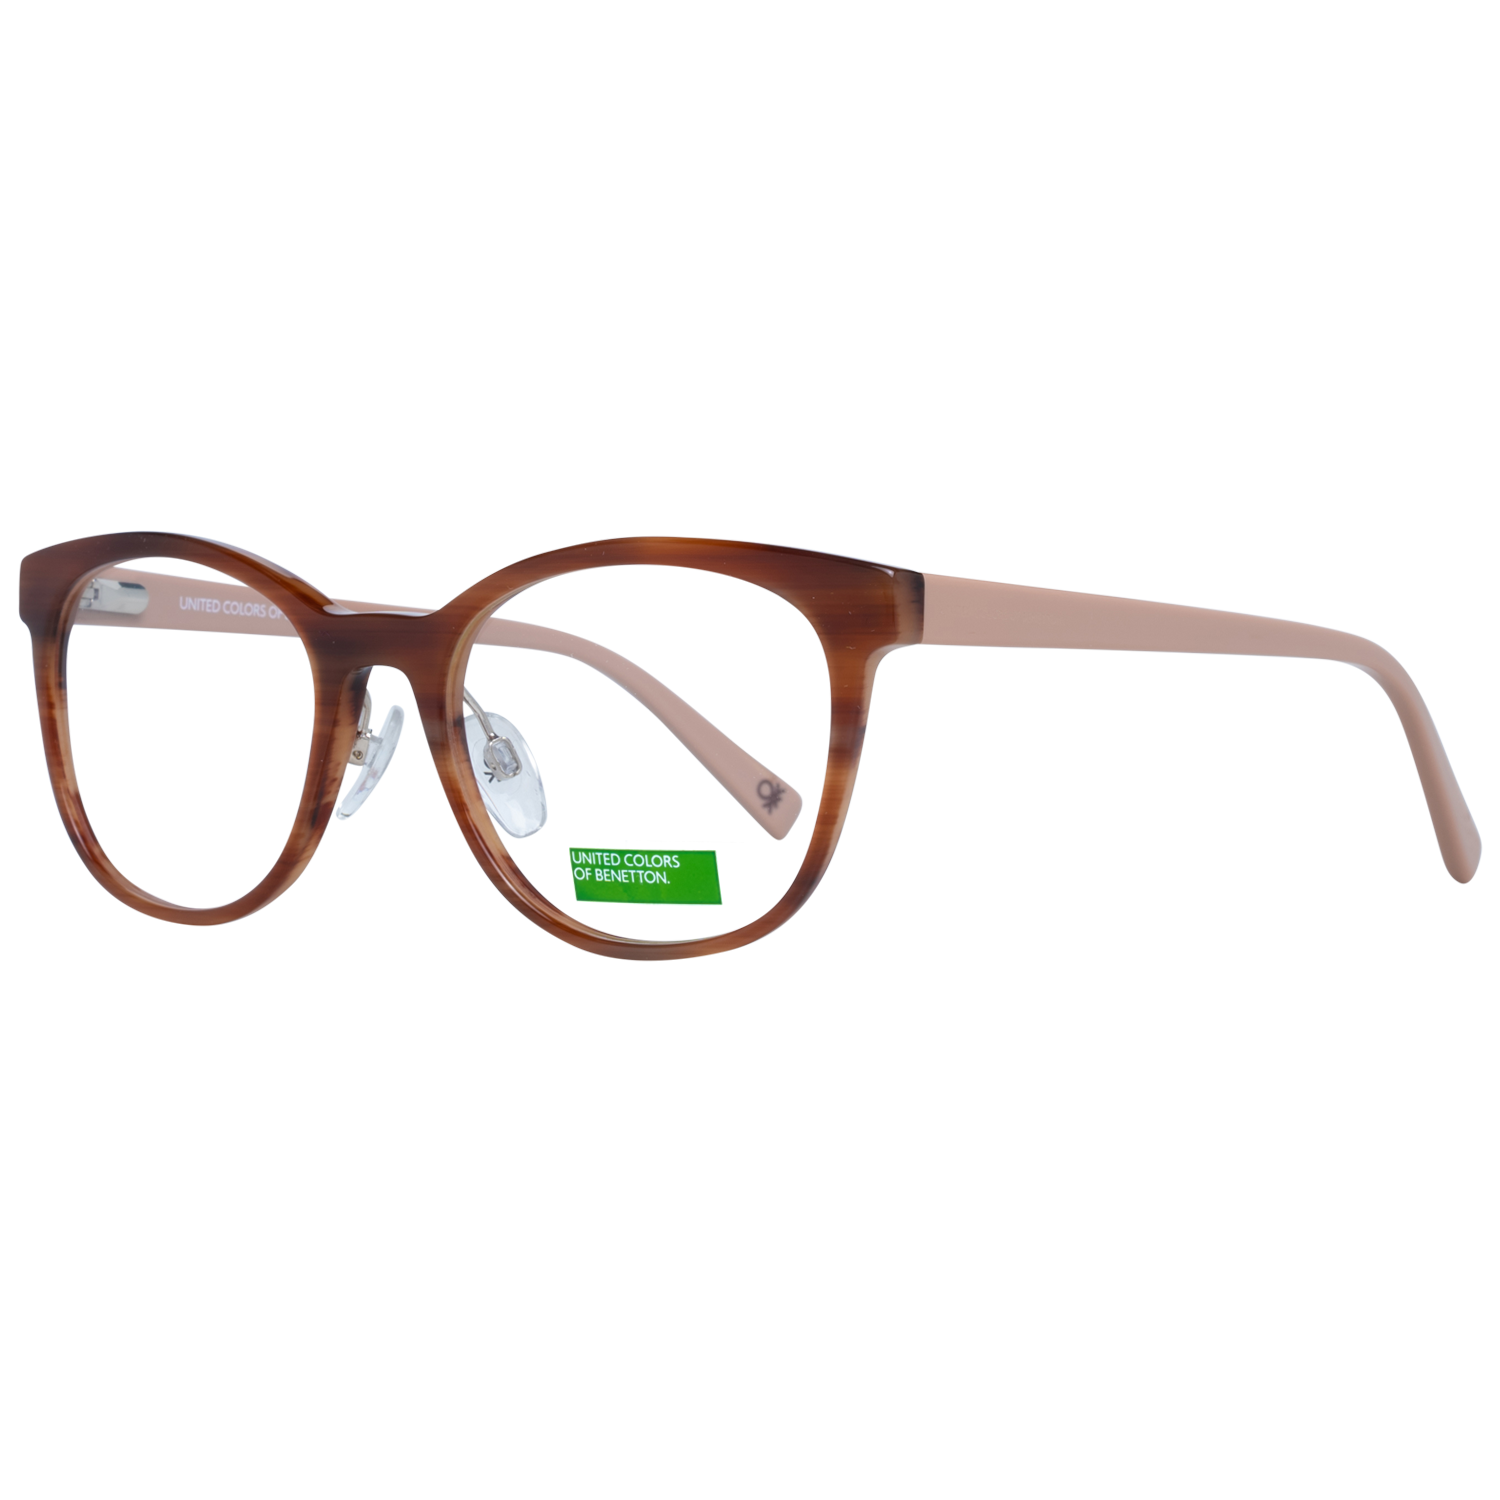 Benetton Frames Benetton Glasses Frames BEO1040 151 50 Eyeglasses Eyewear UK USA Australia 